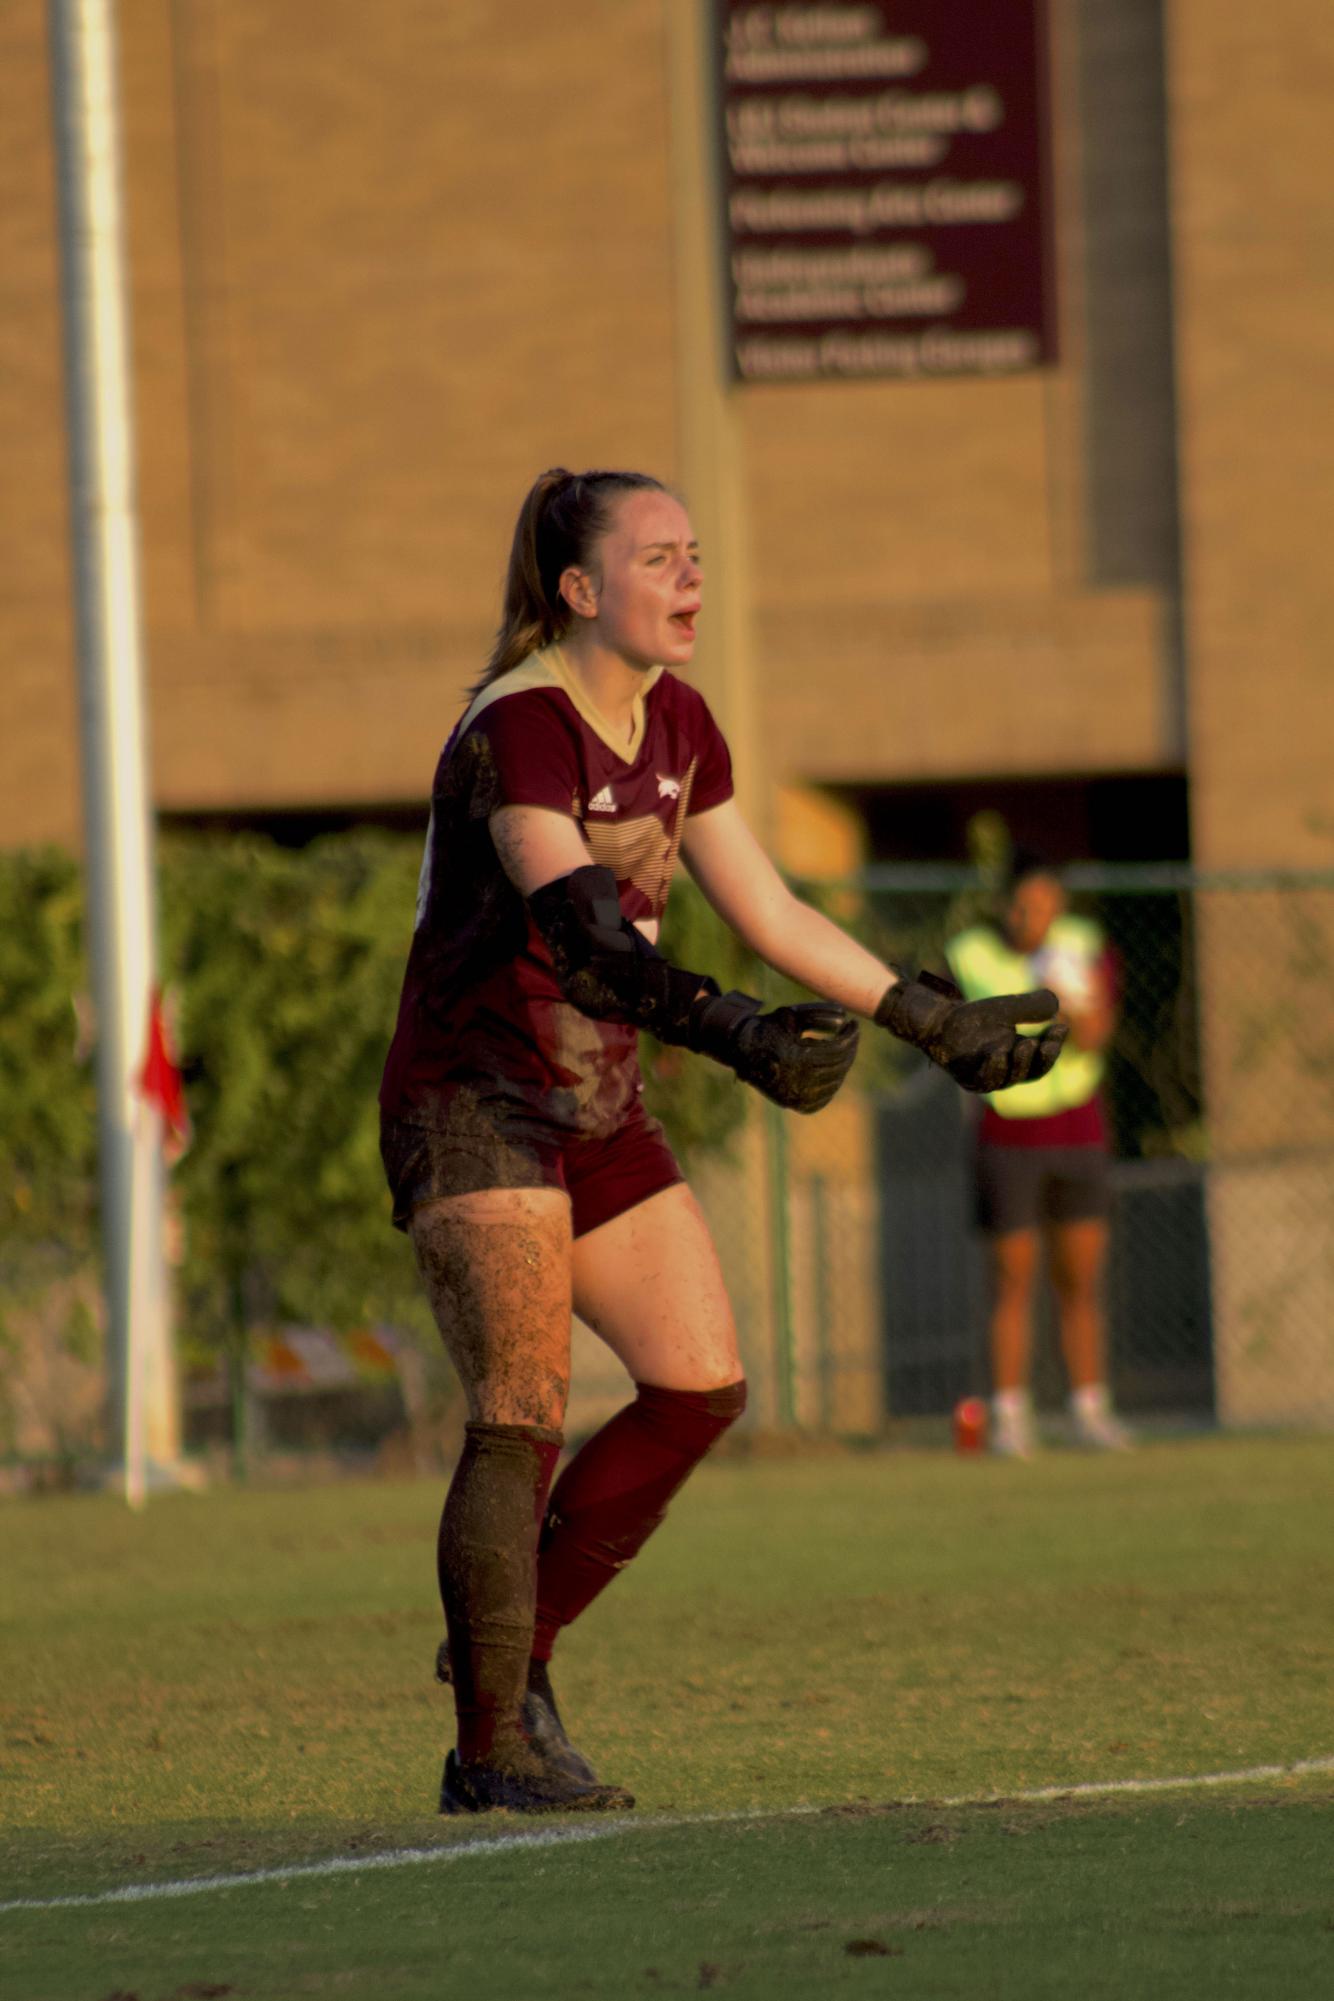 Caitlyn Draper: Rising Star of the Texas State Women’s Soccer Team